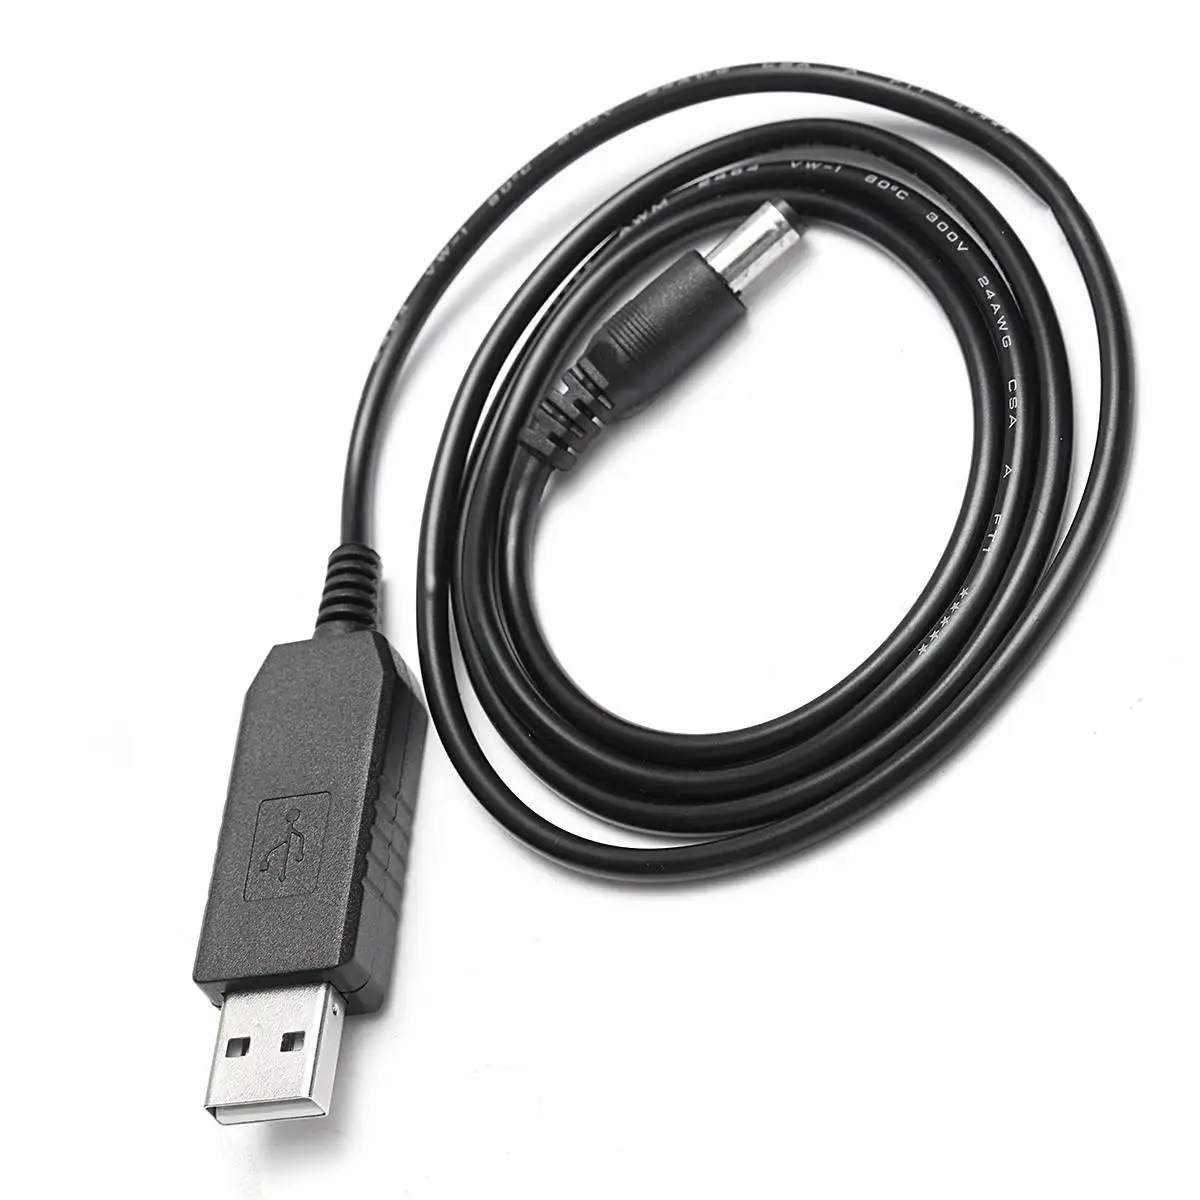 USB Зарядное устройство кабель для BAOFENG UV-5R UV-5RA UV-5RB UV-5RE радиоприемник TYT